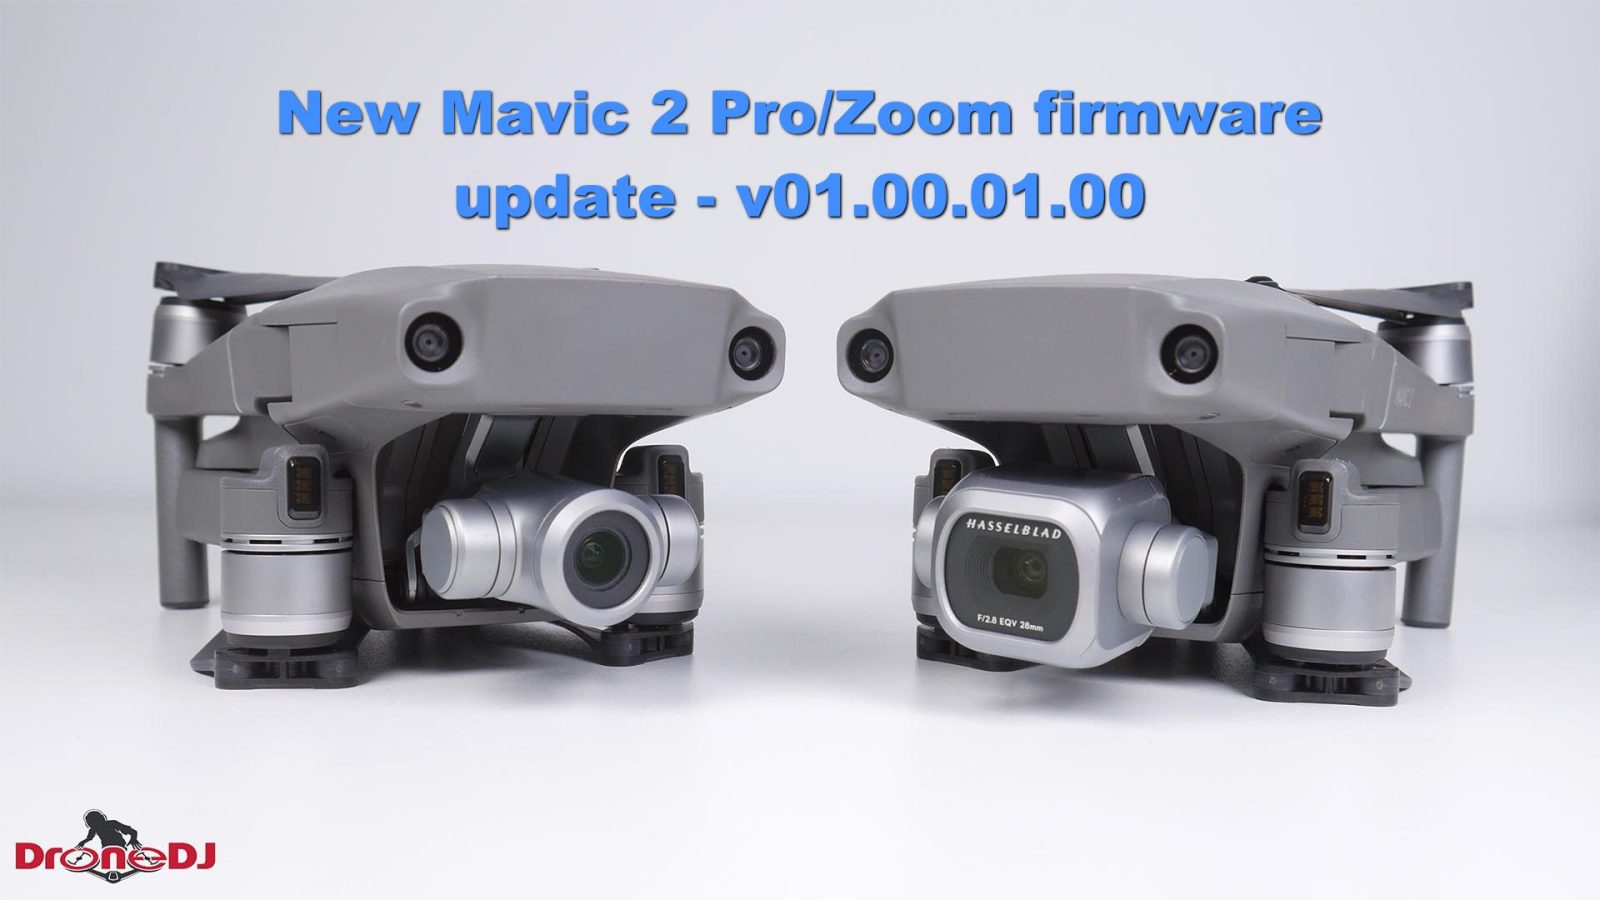 Firmware update - v01.00.01.00 for the DJI Mavic 2 Pro/Zoom